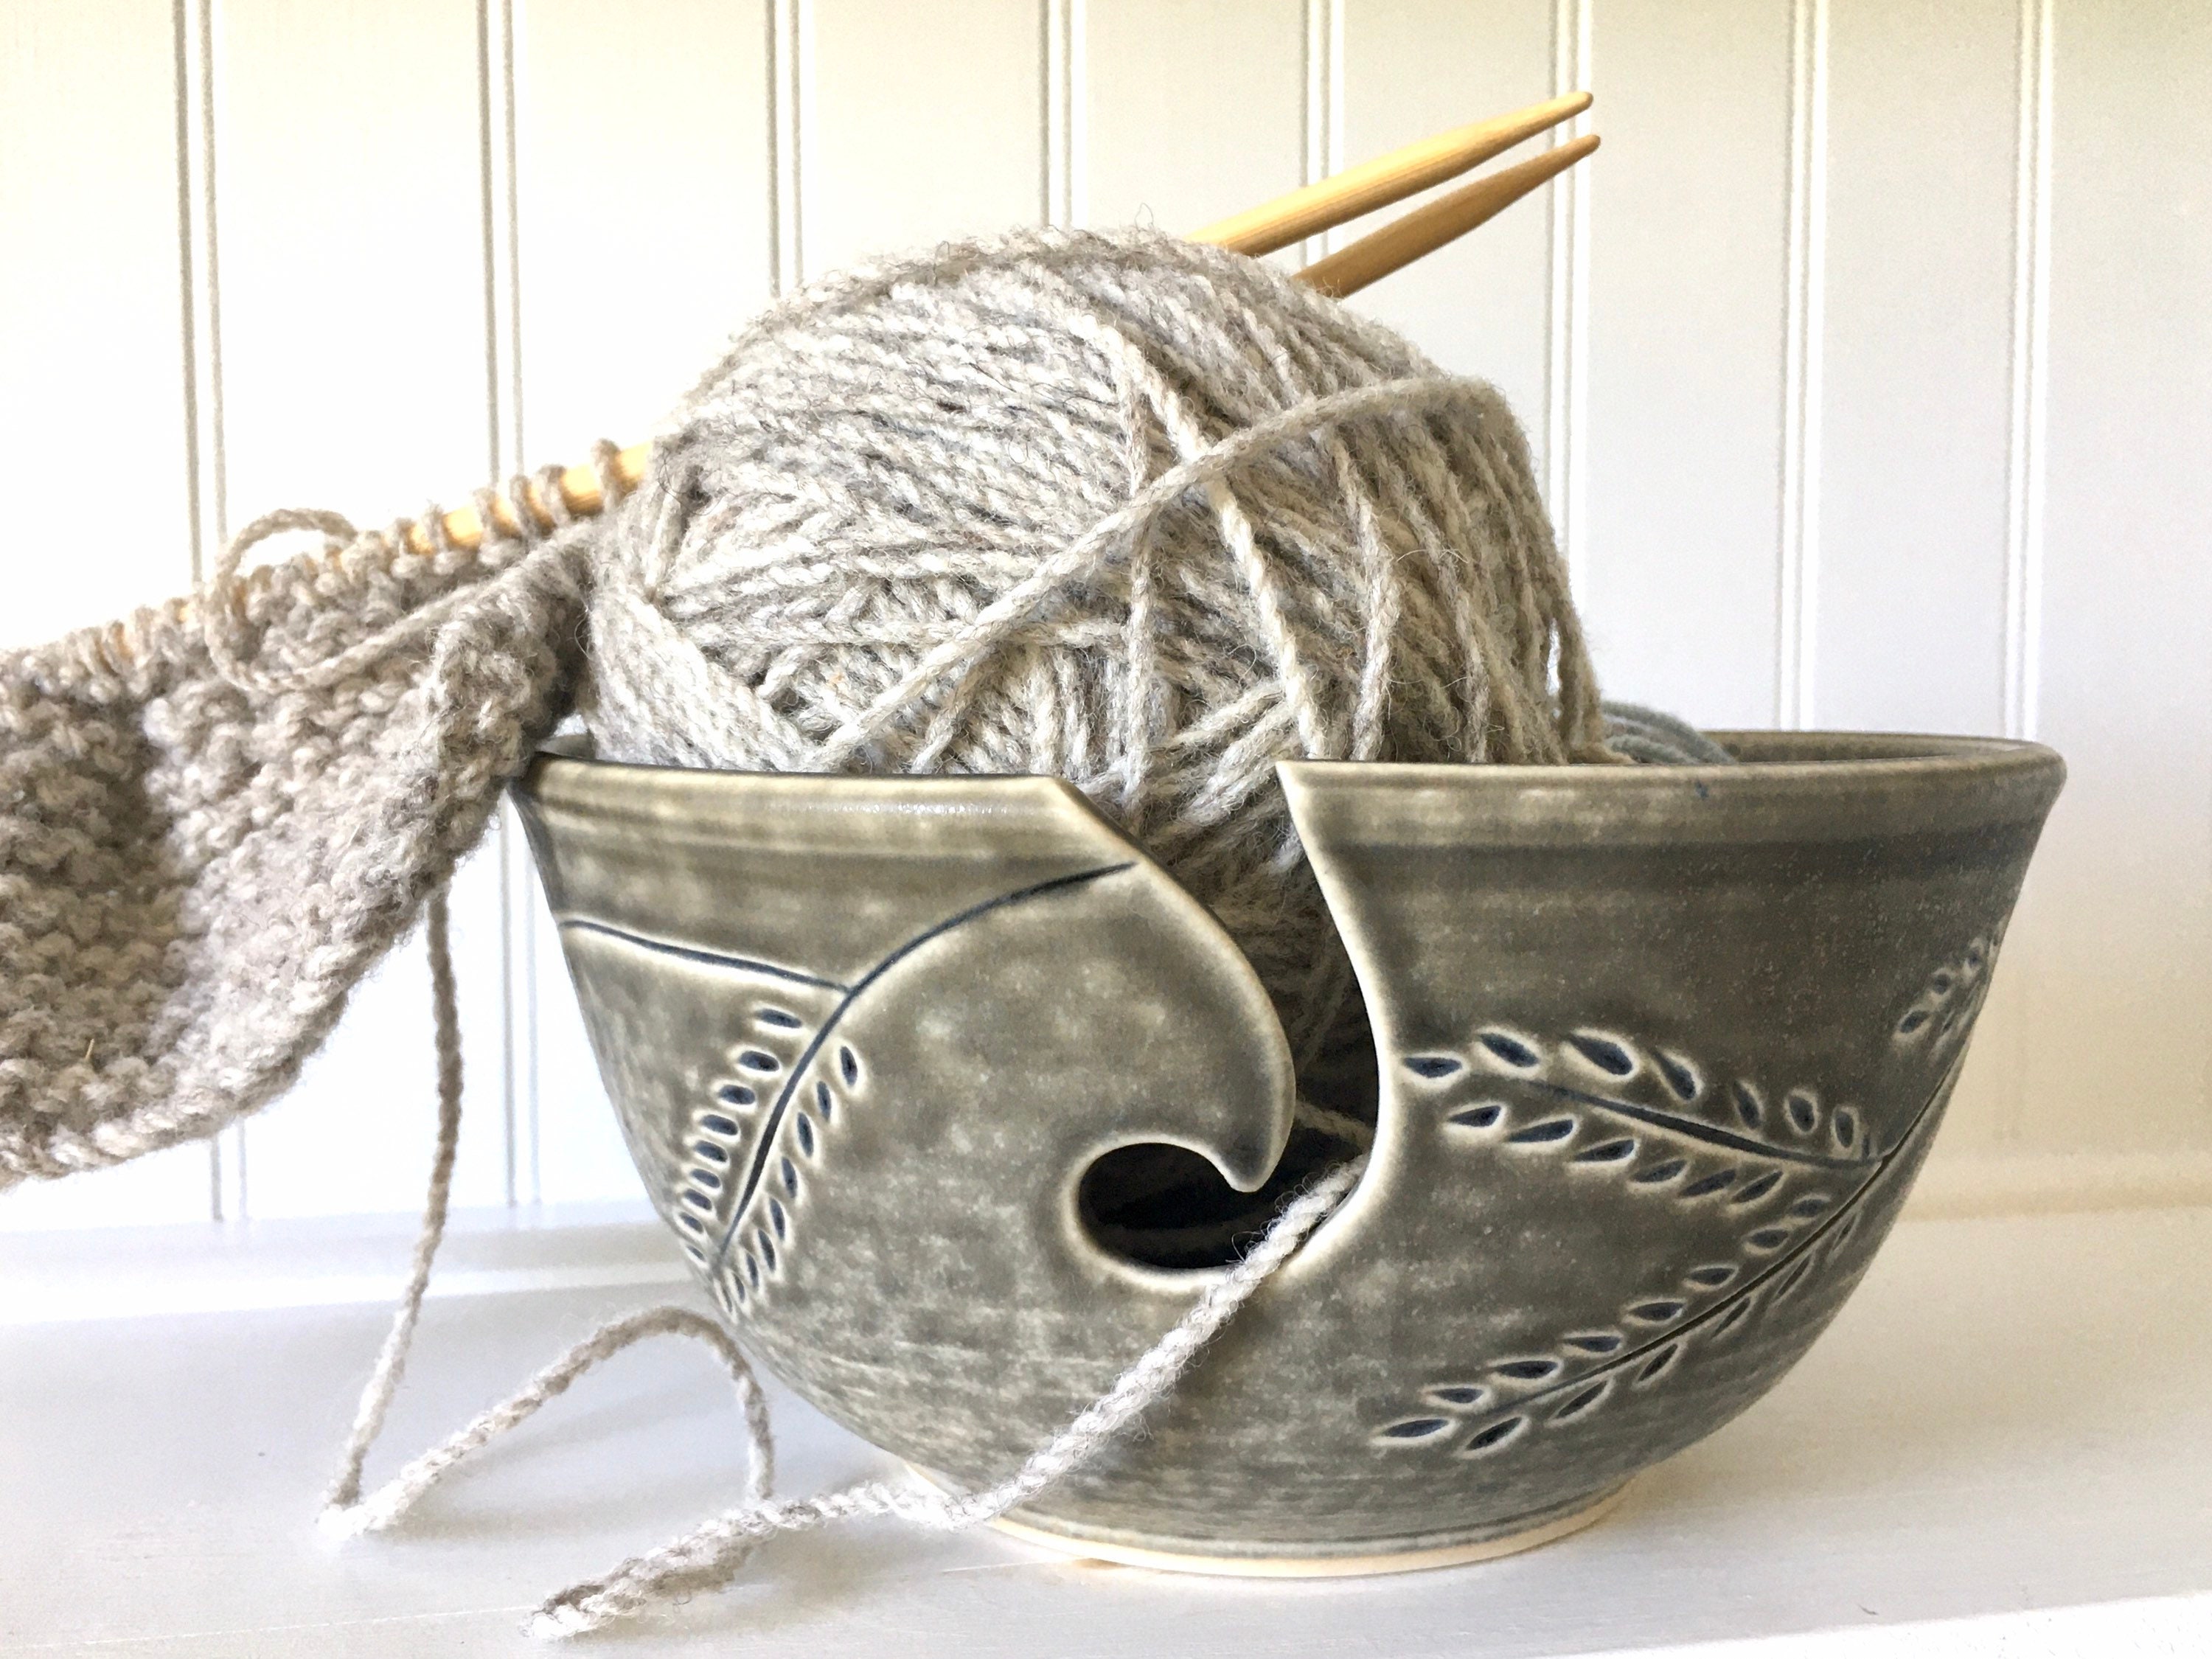 Turquoise Ceramic Yarn Bowl, Yarn Bowl, Knitting Bowl, Crochet Bowl,  Turquoise and White Yarn Bowl, Made to Order 